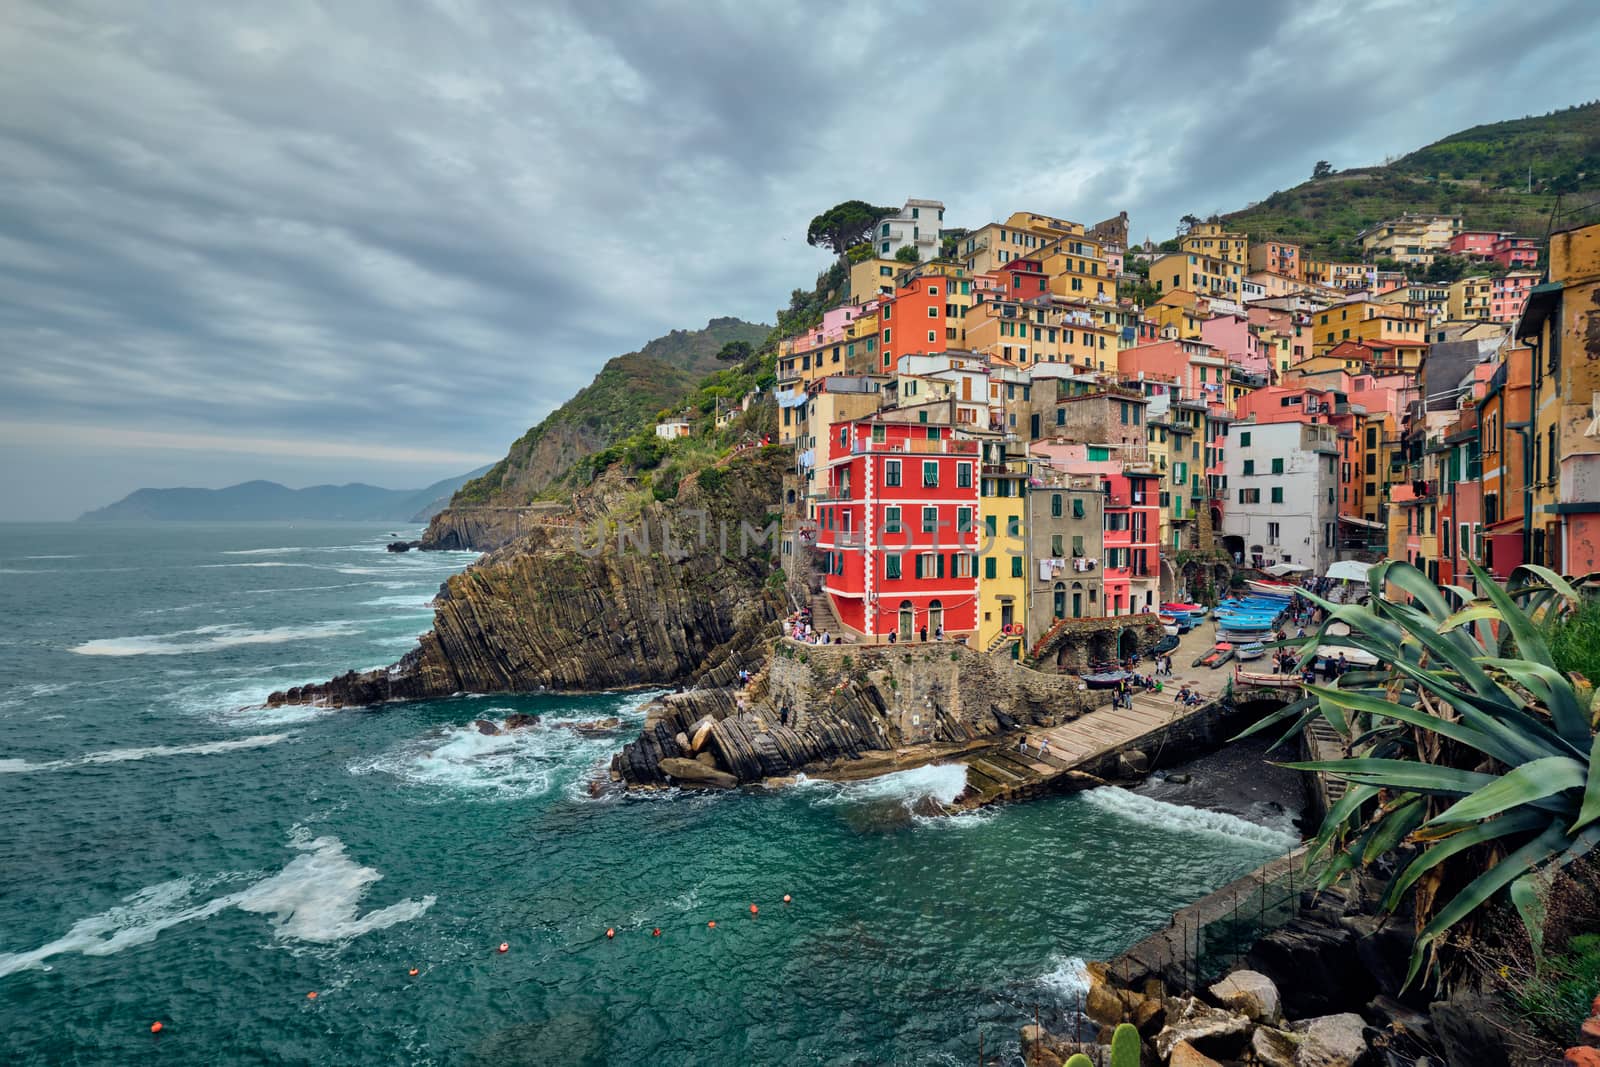 Riomaggiore village, Cinque Terre, Liguria, Italy by dimol